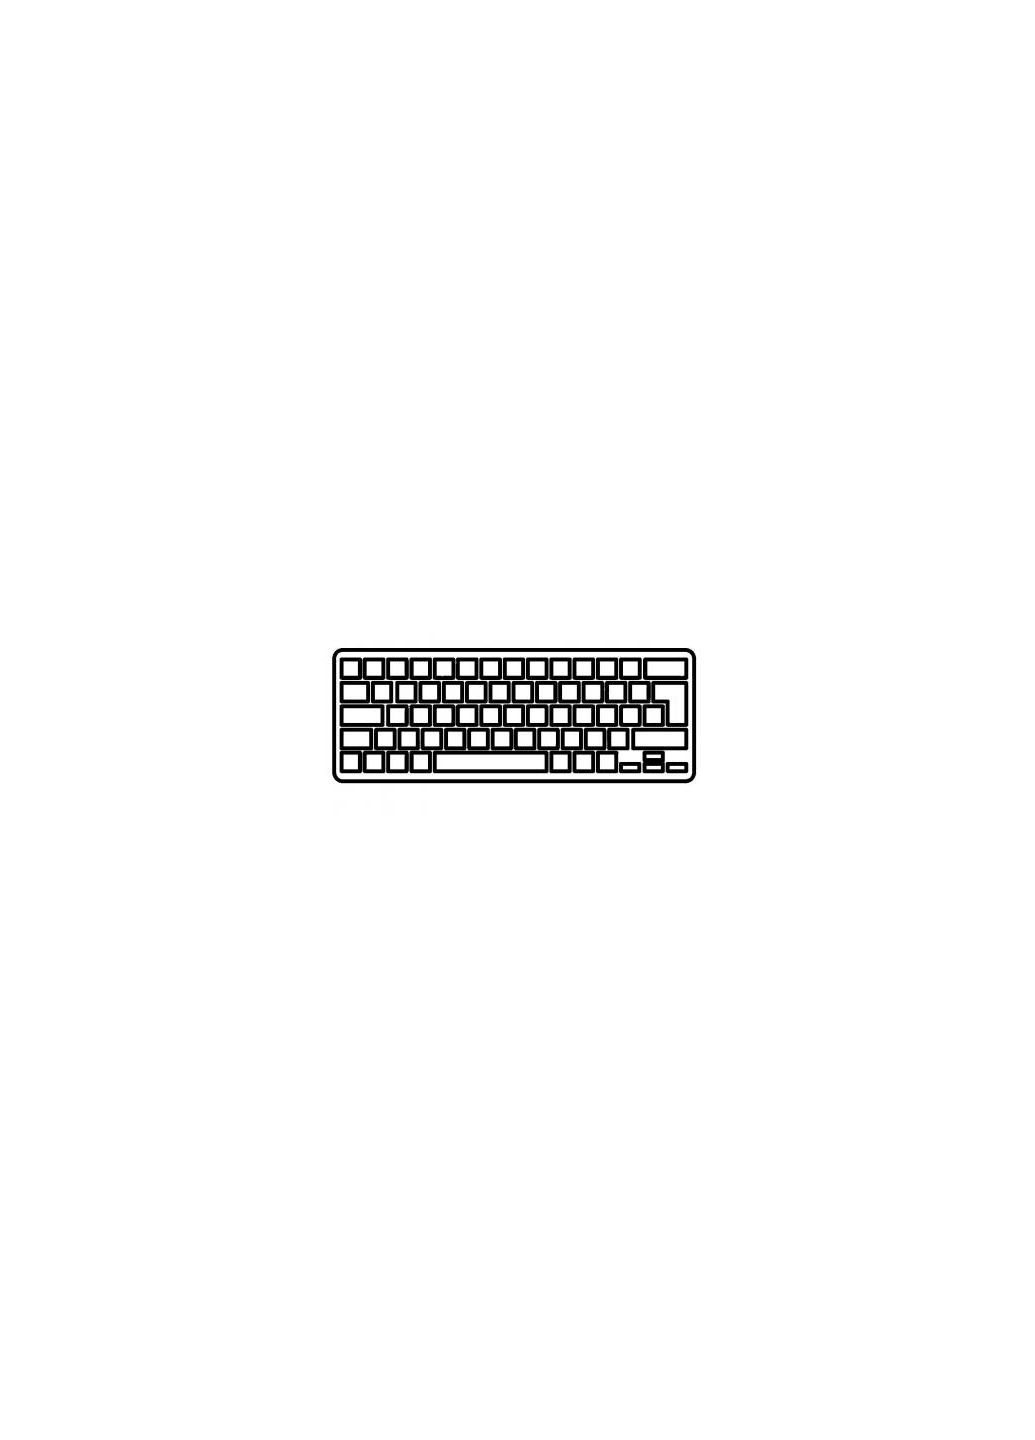 Клавиатура ноутбука A8/A8J/W3/W3J/W3000/F8/N80 серебро RU (A43099) Asus a8/a8j/w3/w3j/w3000/f8/n80 серебро ua (276706947)